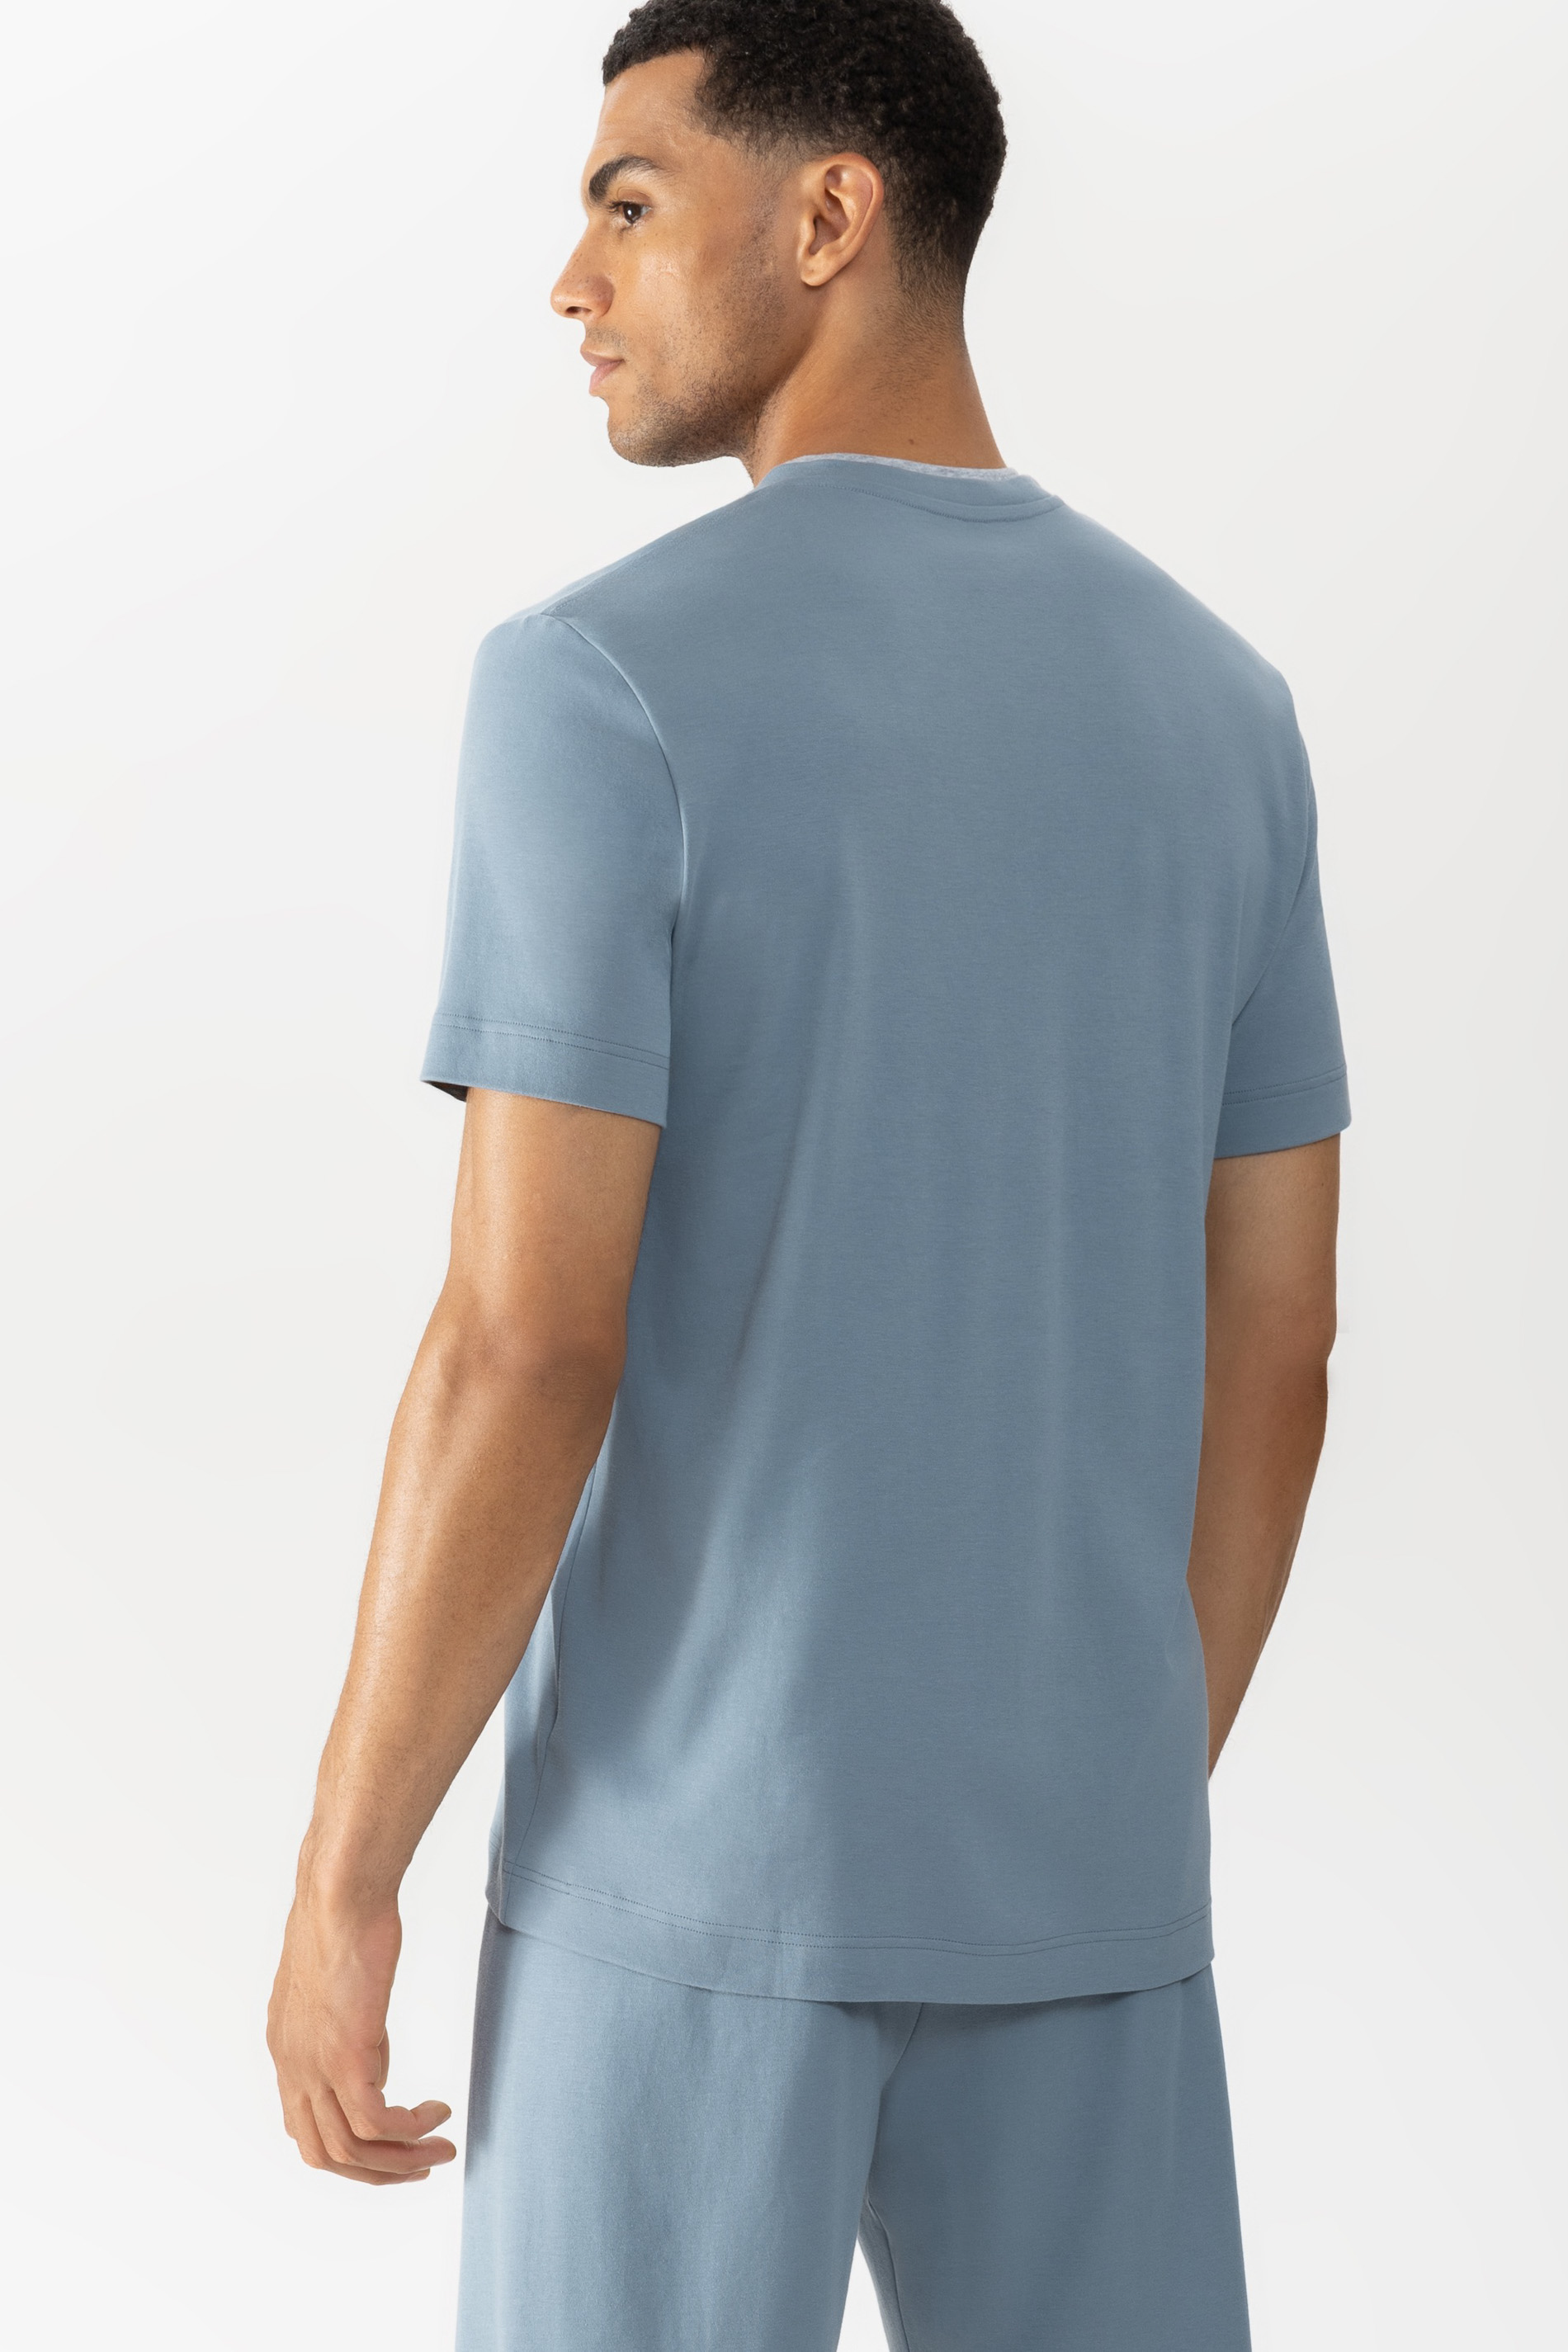 T-Shirt Serie N8TEX 2.0 Rückansicht | mey®